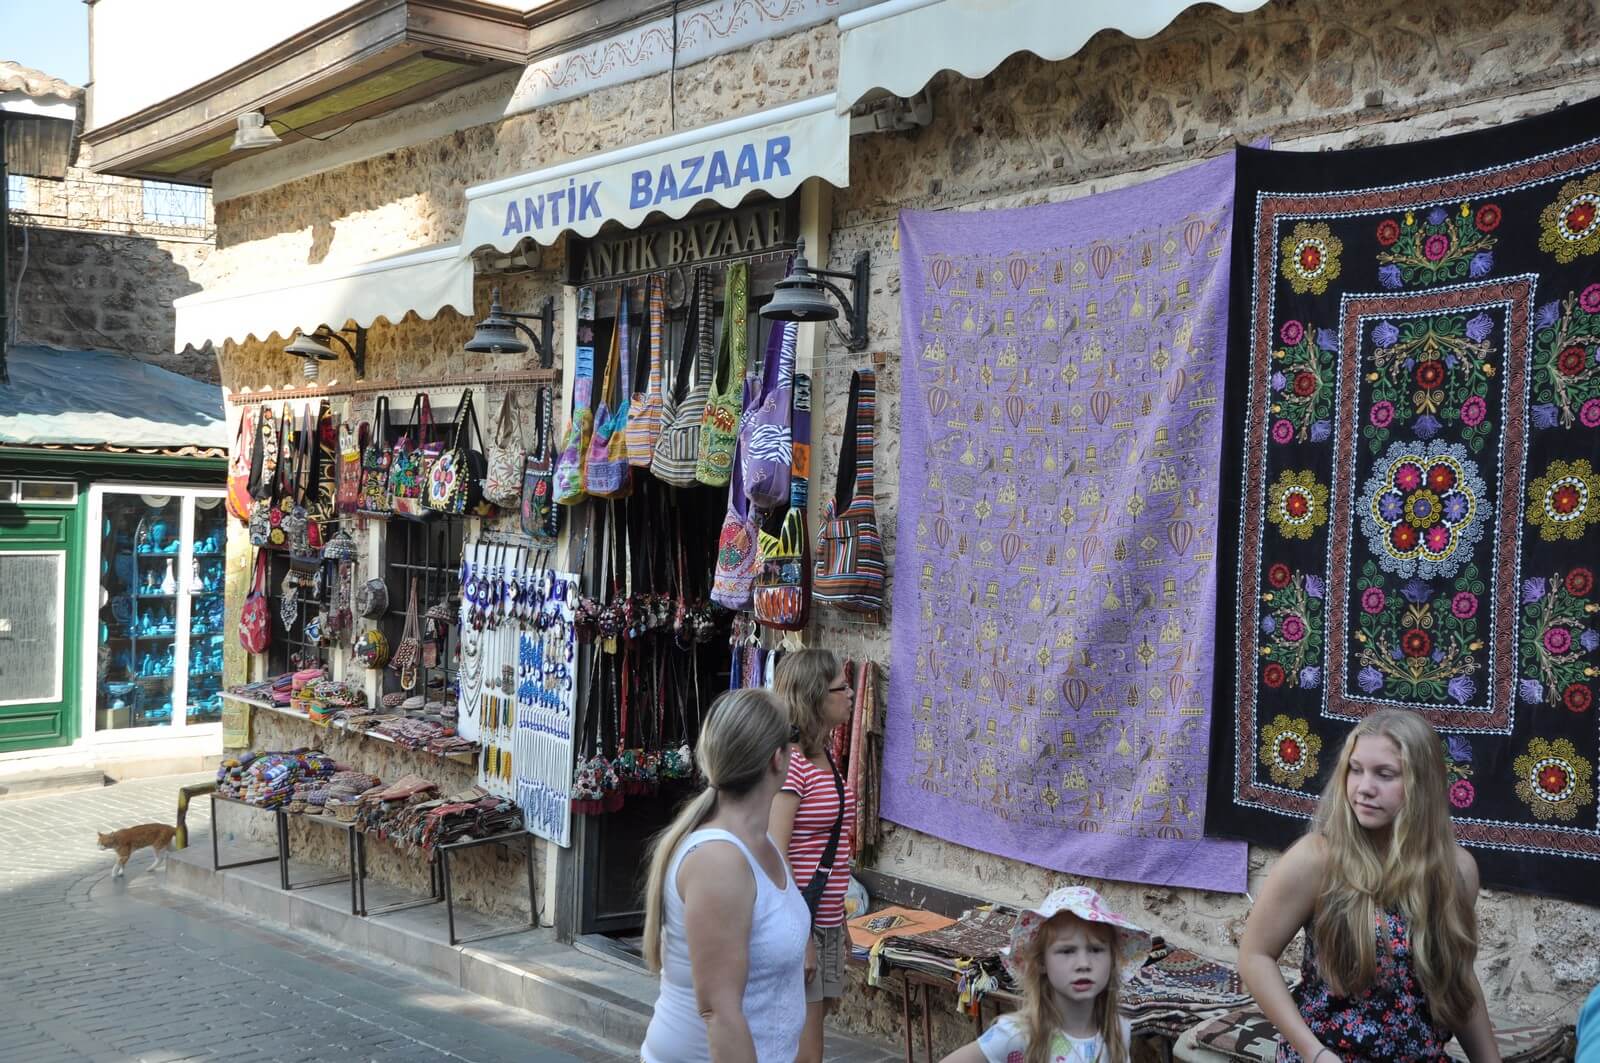 Foto: Viele Lden in der Altstadt von Antalya laden zum Shoppen ein - Lupe Reisen